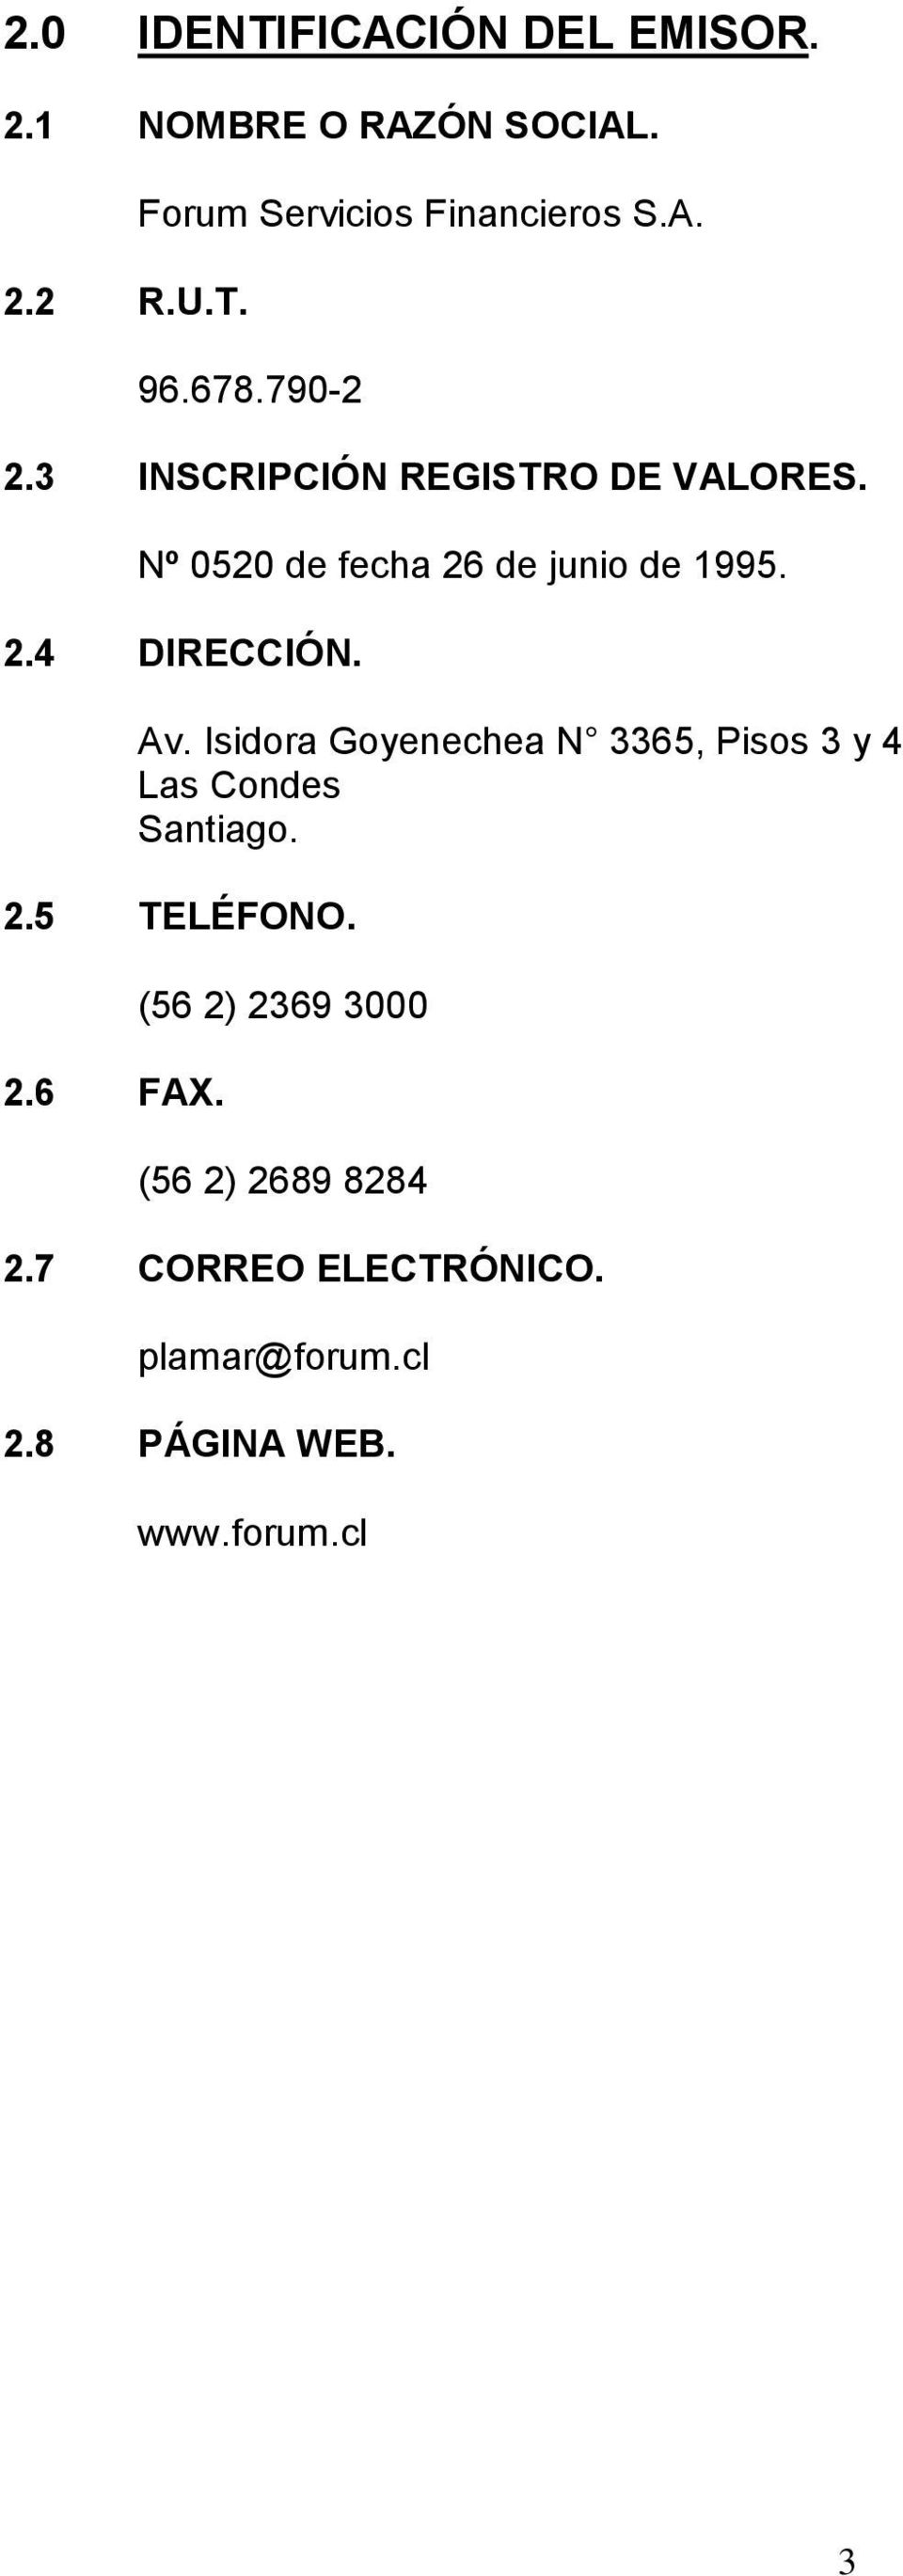 Av. Isidora Goyenechea N 3365, Pisos 3 y 4 Las Condes Santiago. 2.5 TELÉFONO. 2.6 FAX.